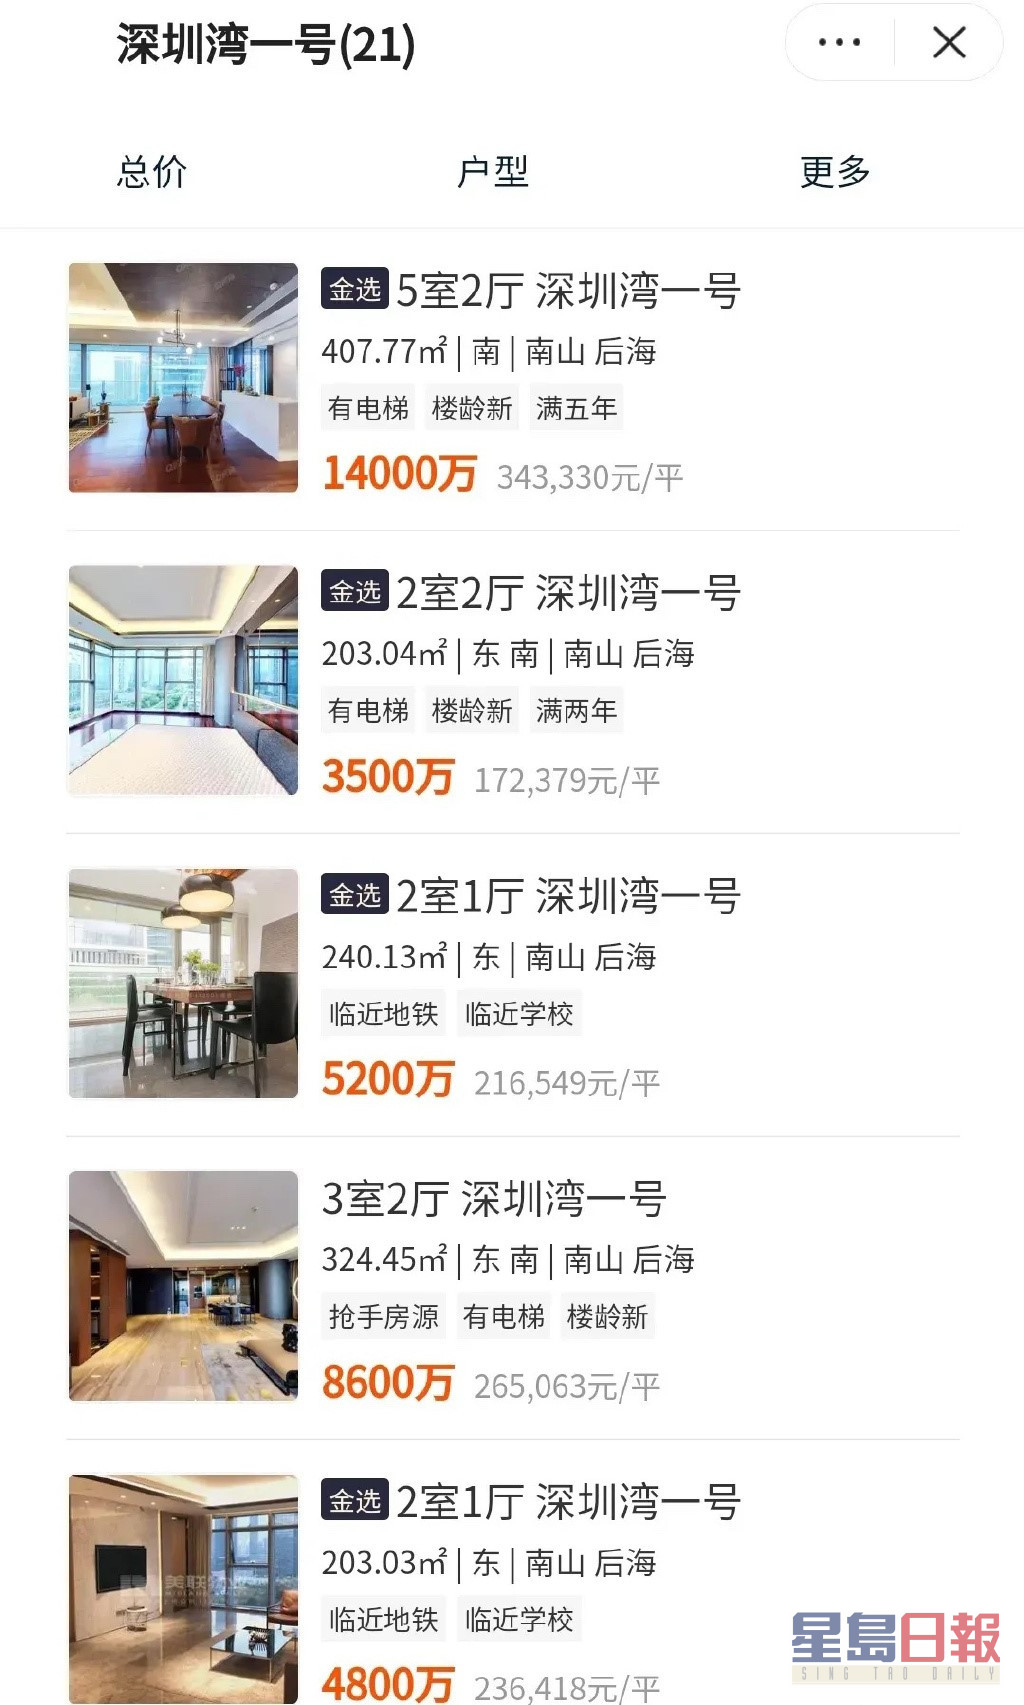 該豪宅小戶型2室2廳售價為3,500萬人民幣（約3900萬港幣），大戶型5室2廳售價為1.4億人民幣（約1.6億港幣）。